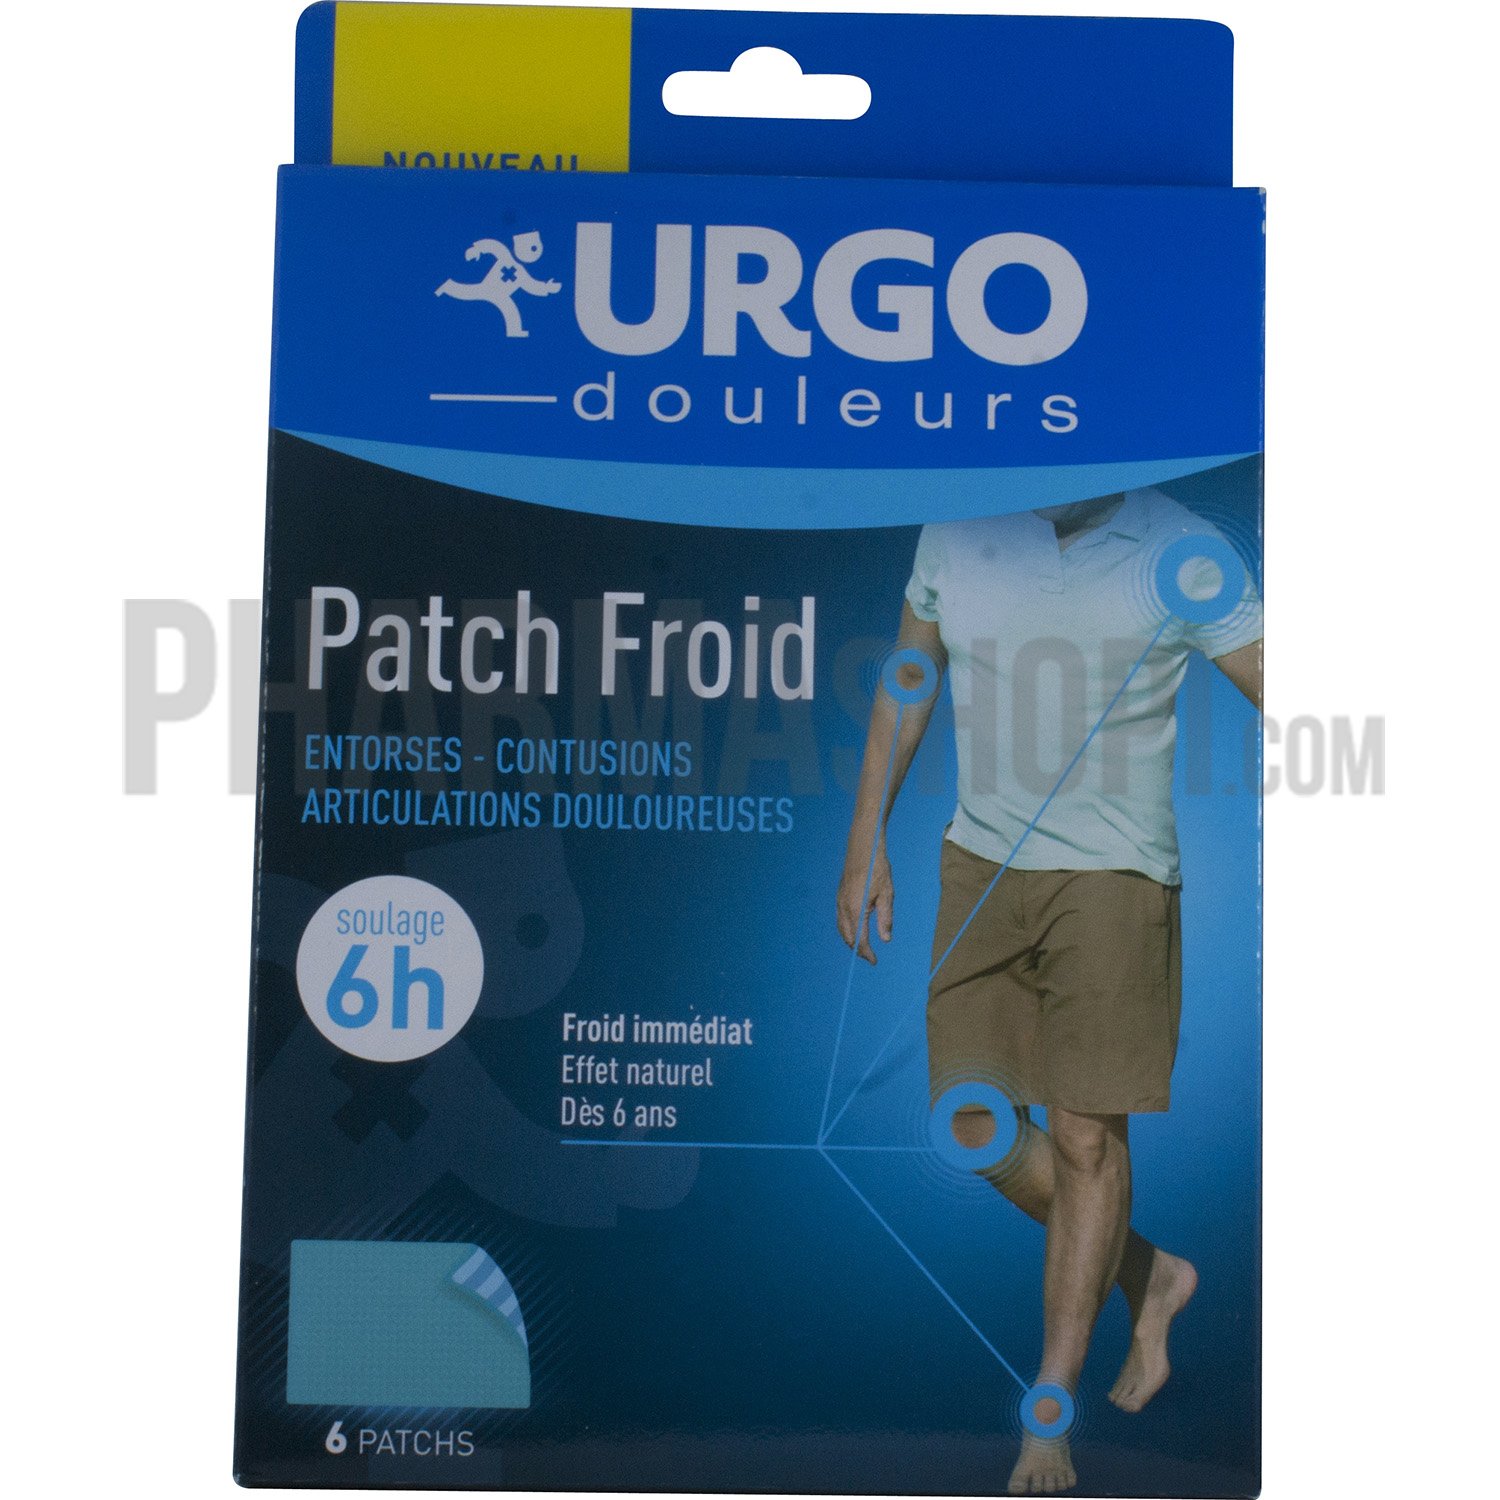 Patch froid 6h Urgo - boîte de 6 patchs